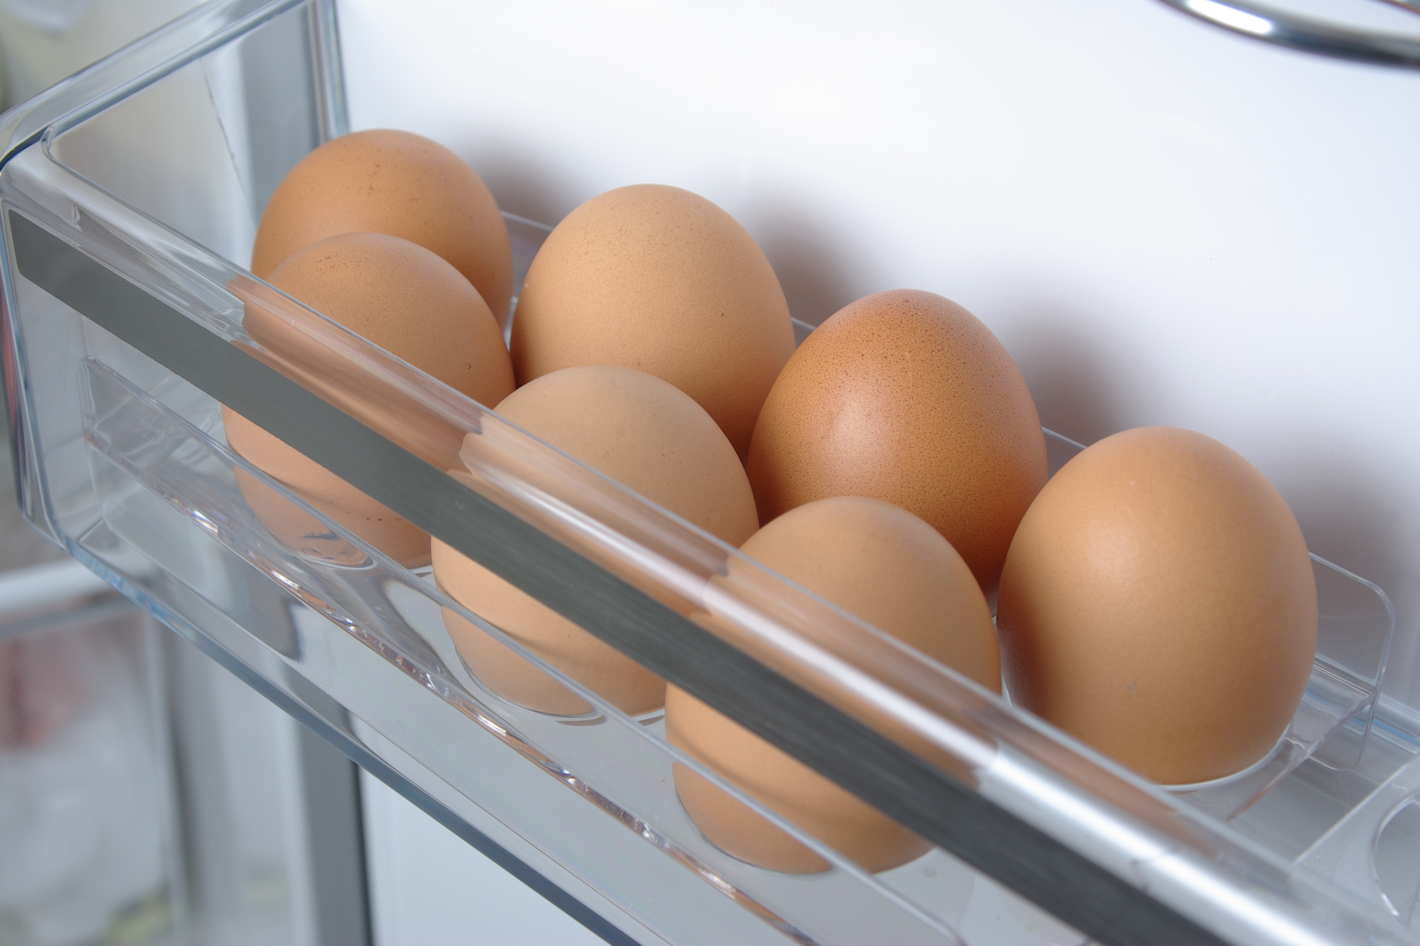 Le uova si mettono in frigo? Ecco la risposta dell'esperto 